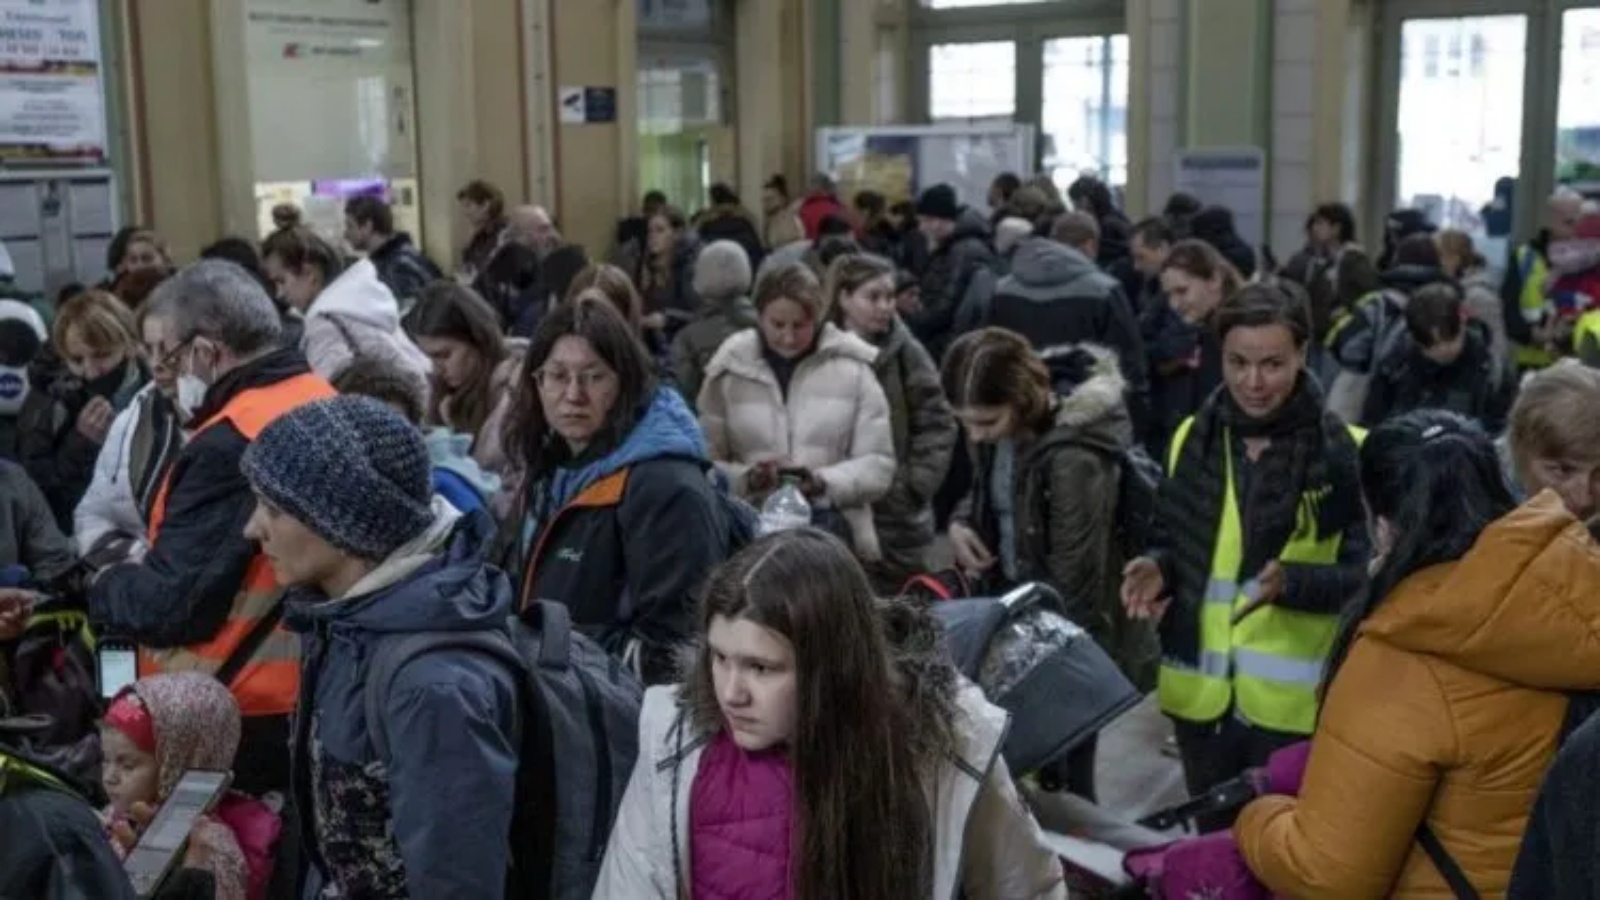 اللاجئون من أوكرانيا يقفون في طابور للحصول على تذاكر قطار مجانية في قاعة محطة السكك الحديدية الرئيسية في برزيميسل، جنوب شرق بولندا